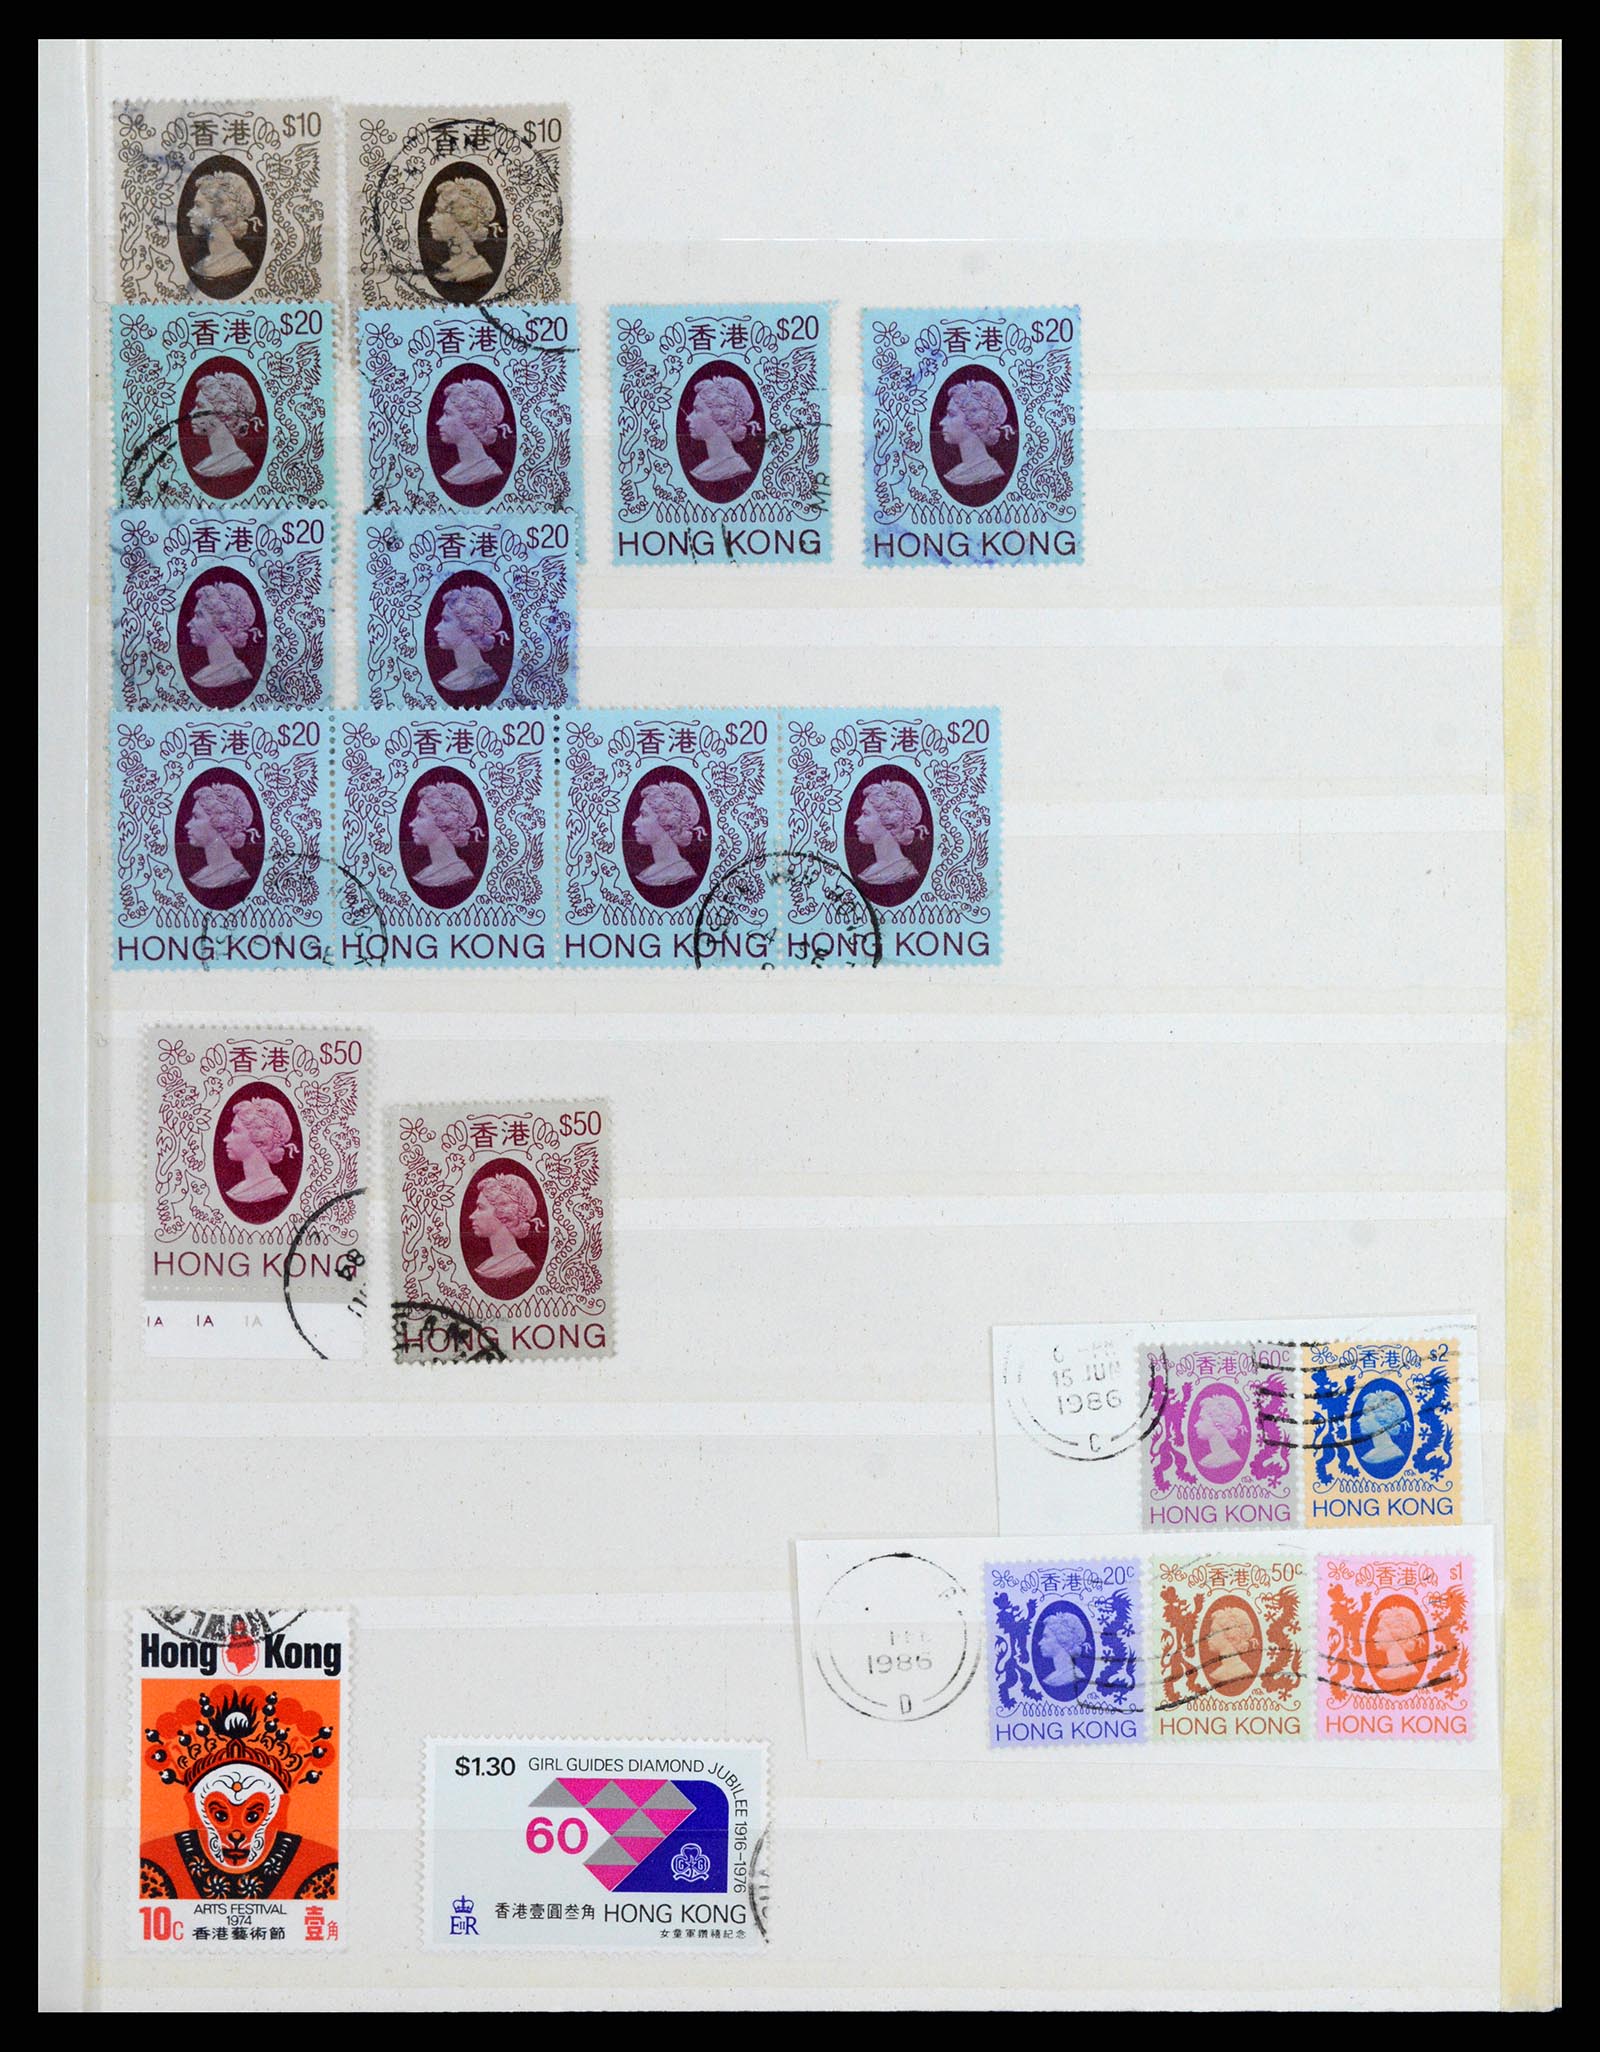 37358 025 - Stamp collection 37358 Hong Kong 1861-1997.